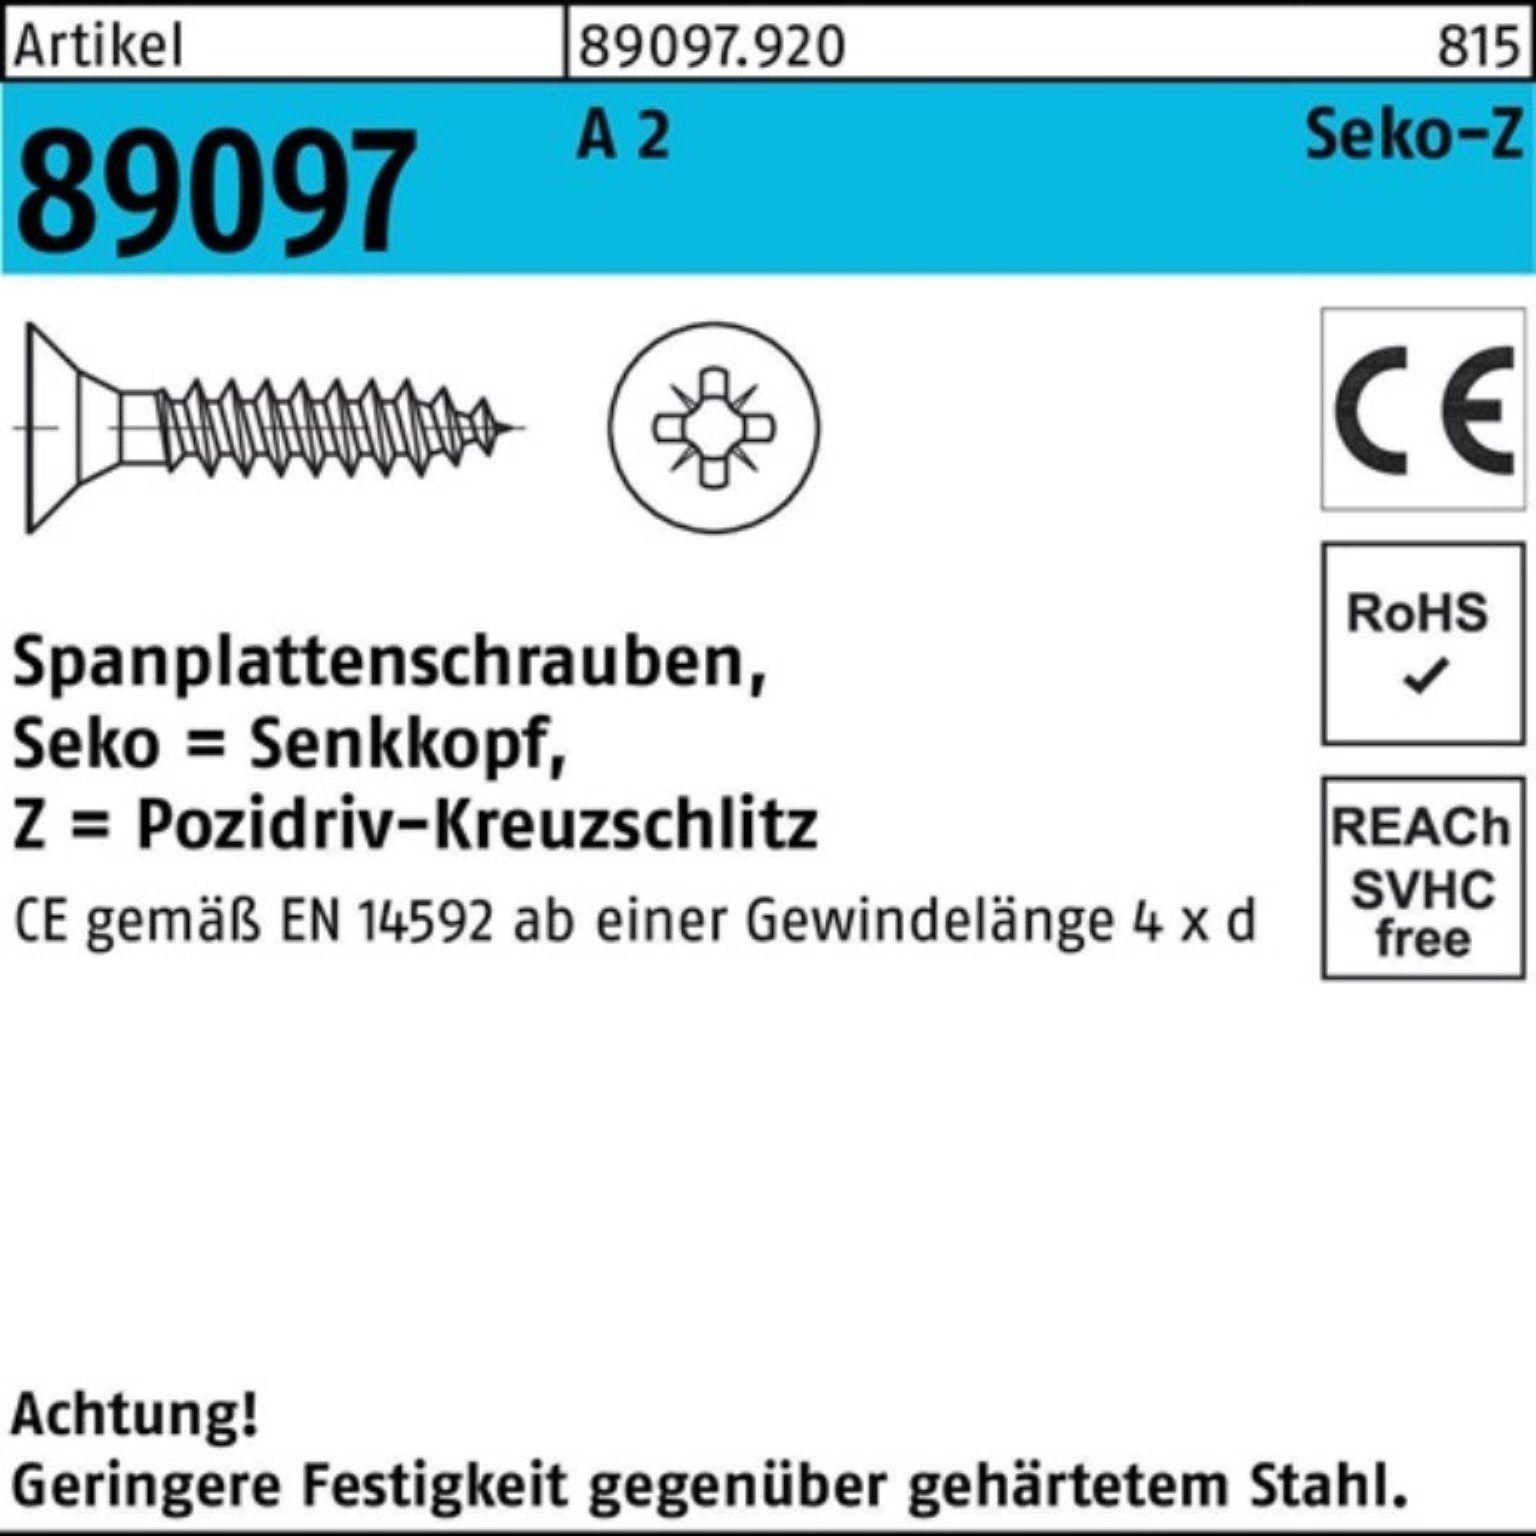 Stü PZ SEKO Spanplattenschraube A 2 Spanplattenschraube R Pack 89097 200 Reyher 50-Z VG 5x 200er